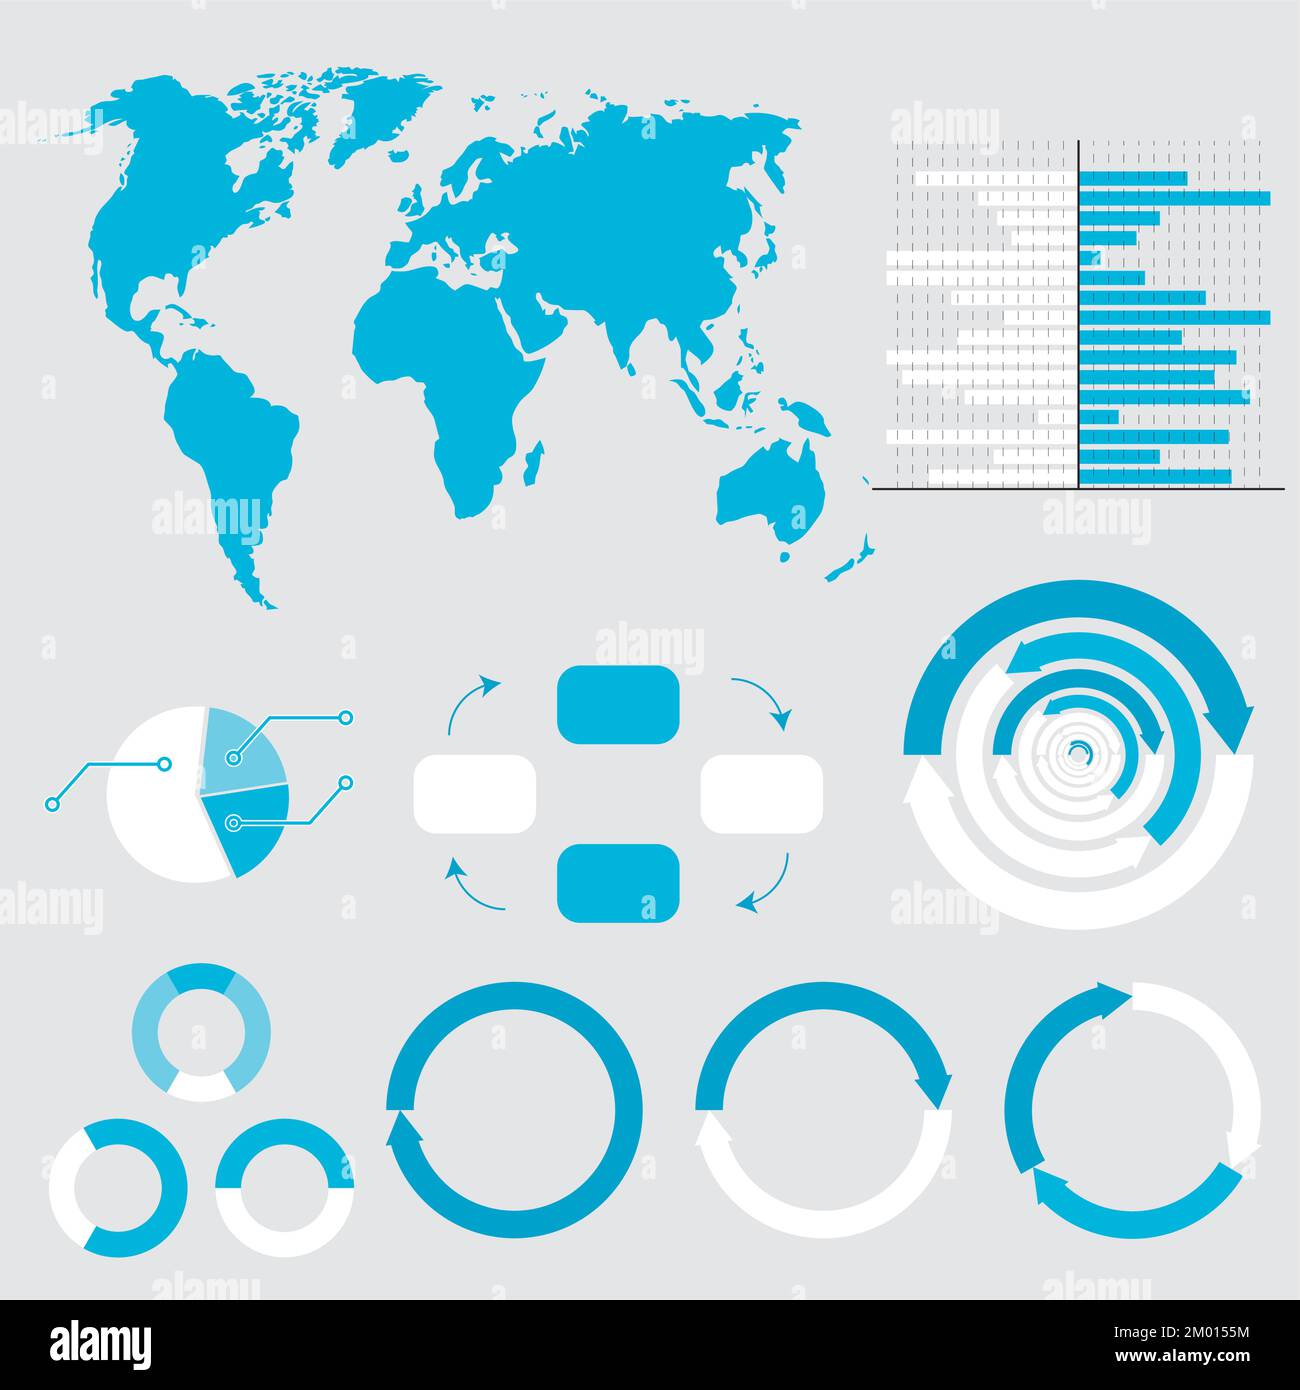 Dashboard mit Statistikdiagramm und Grafik zur Weltkarte. Vektordarstellung. Infografik-Daten der Globe, Weltkarte, grafische Darstellung des Berichts, Computer-pe Stock Vektor